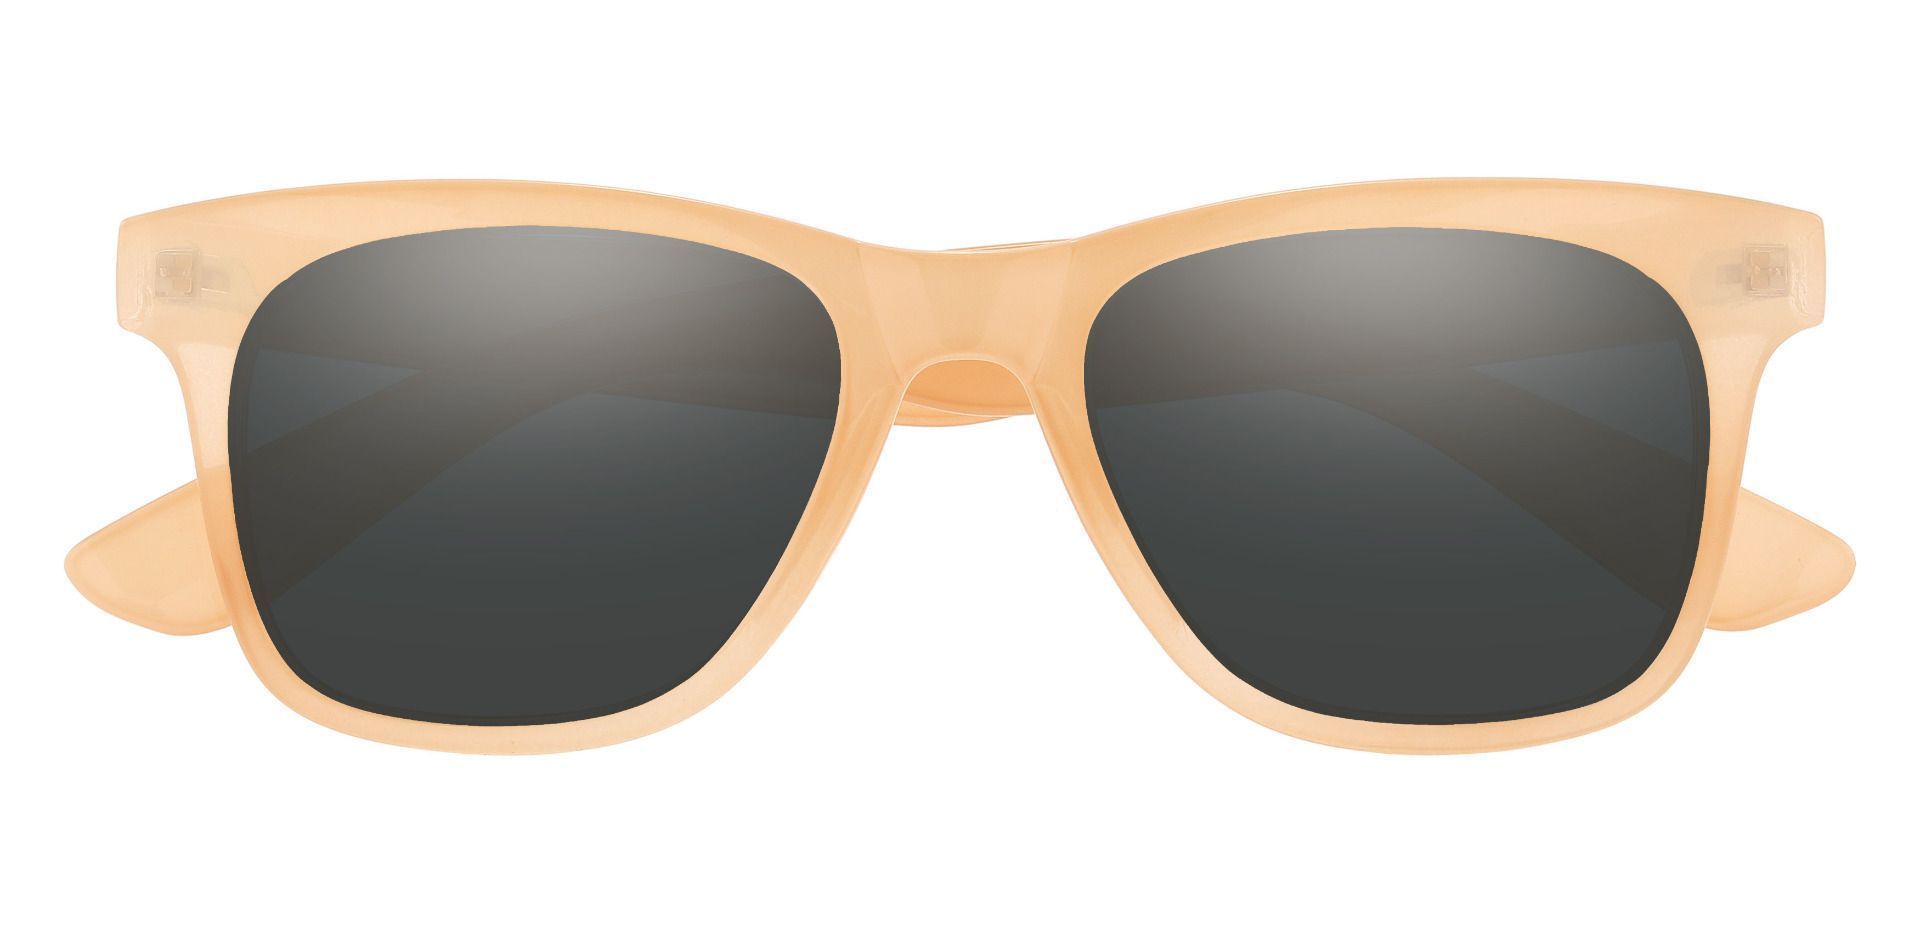 Hurley Square Non-Rx Sunglasses - Peach Fuzz